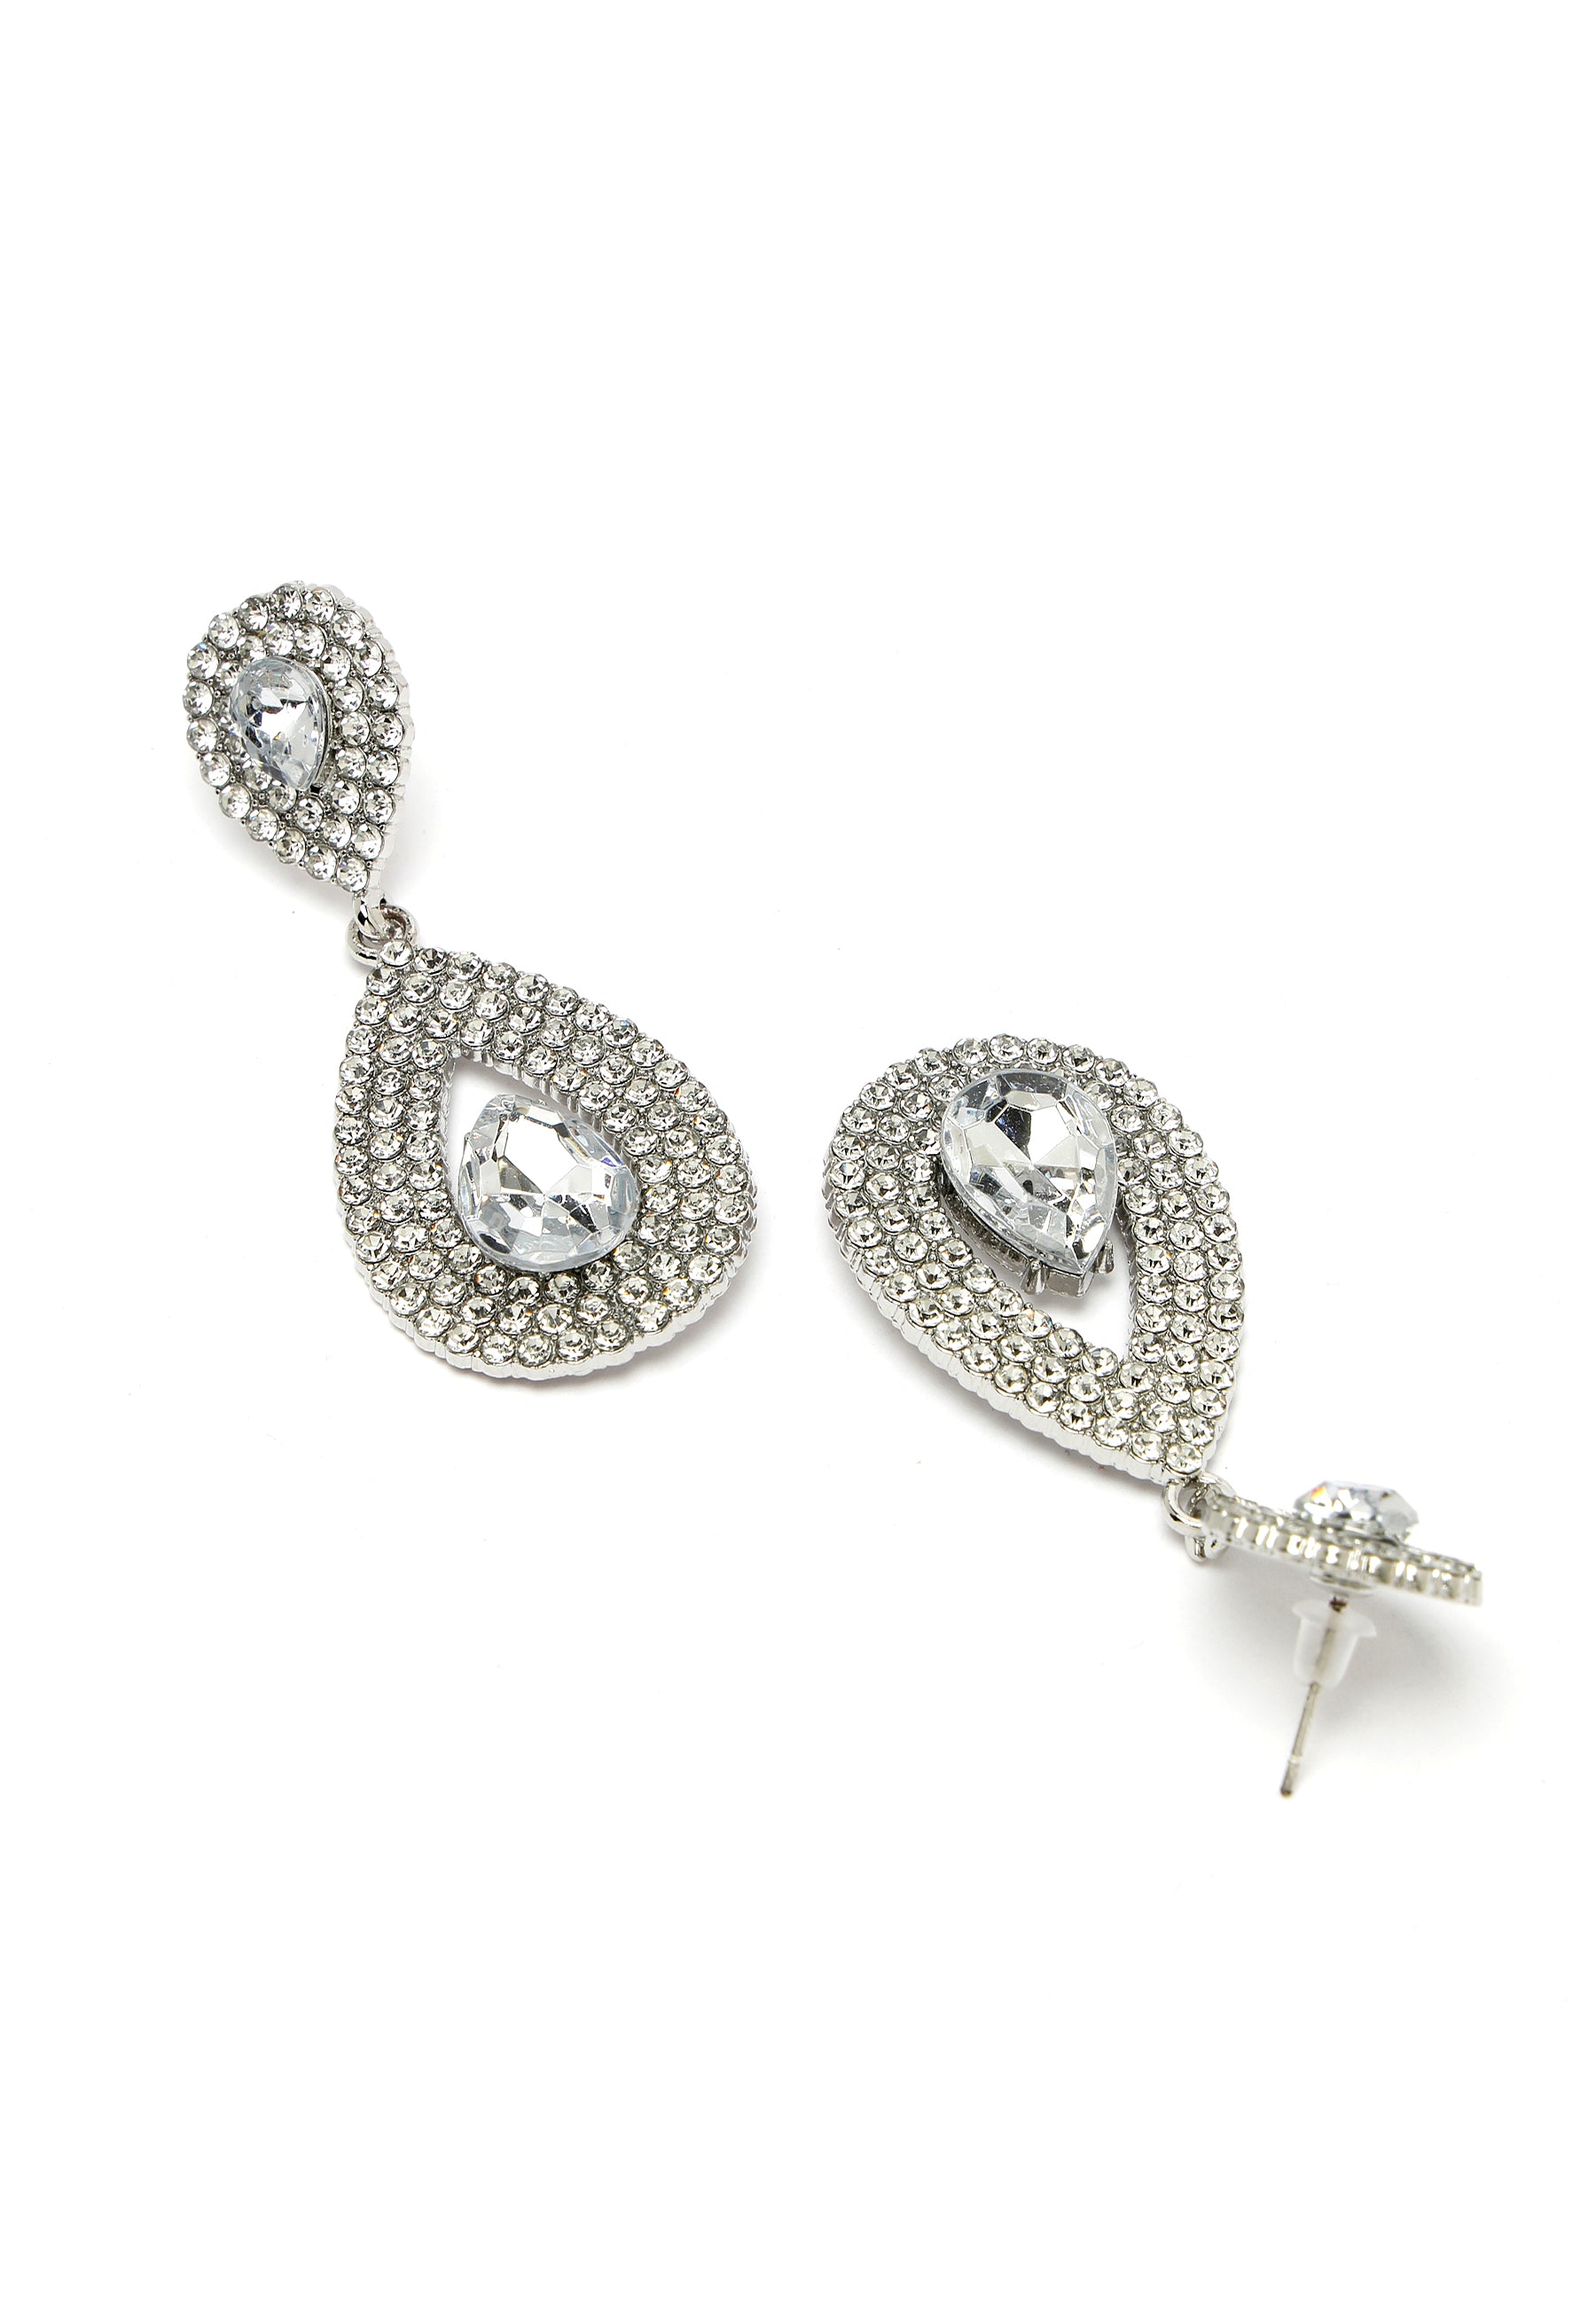 Avant-Garde Paris Silver-Colored Water Droplet Crystal Earrings